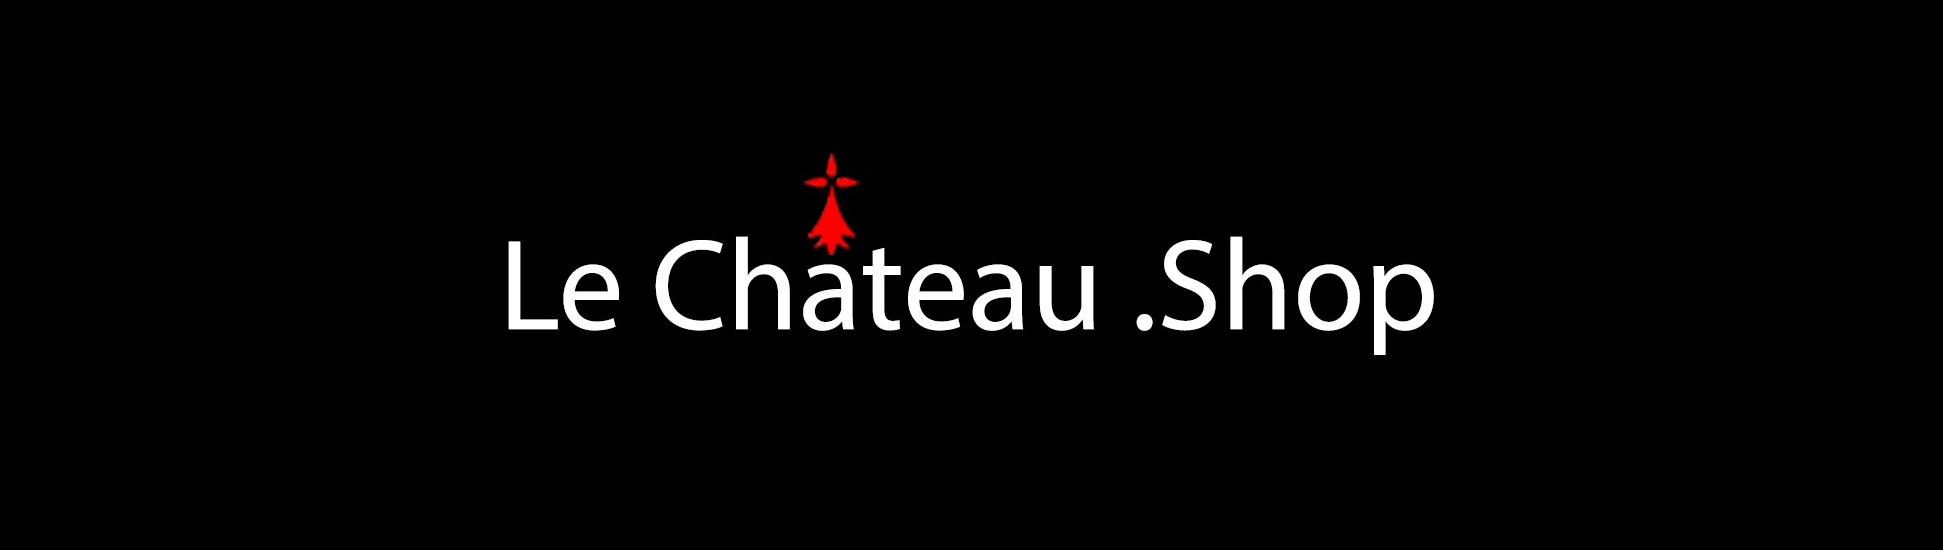 Le Chateau shop banner